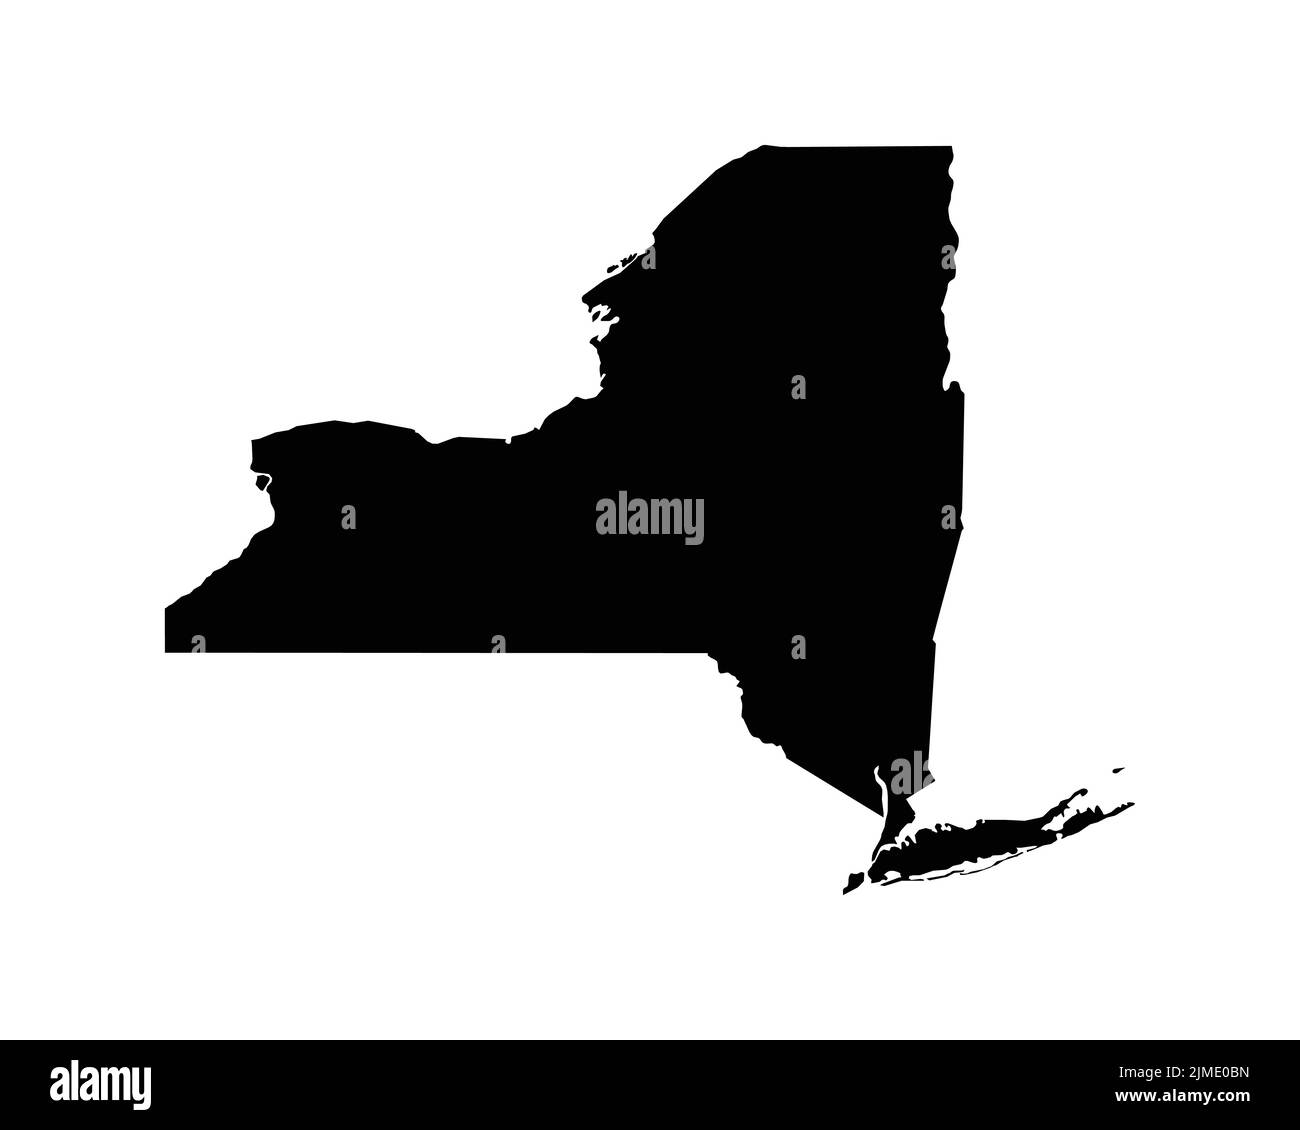 Mappa degli Stati Uniti di New York. Mappa dello stato degli Stati Uniti di New York. Bianco e nero New Yorker state Border Boundary Line Outline Geography Territory Shape Vector Illustration EPS CLI Illustrazione Vettoriale